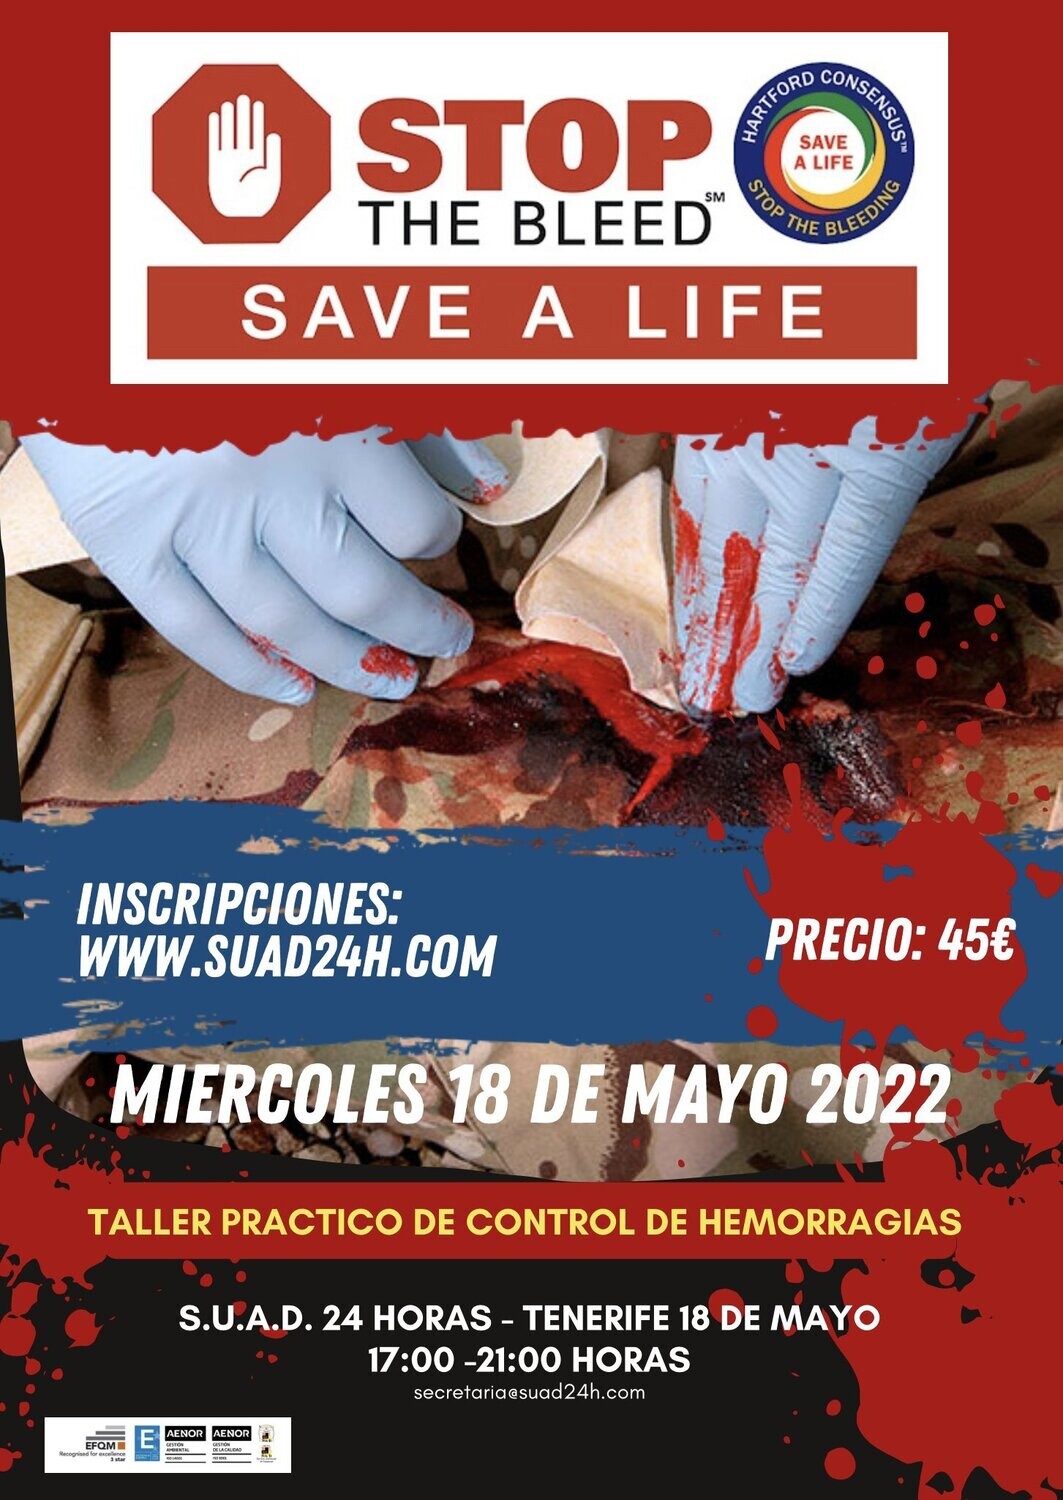 2ª Edición mayo 2022 -CURSO PRACTICO DE CONTROL DE HEMORRAGIAS - STOP THE BLEED